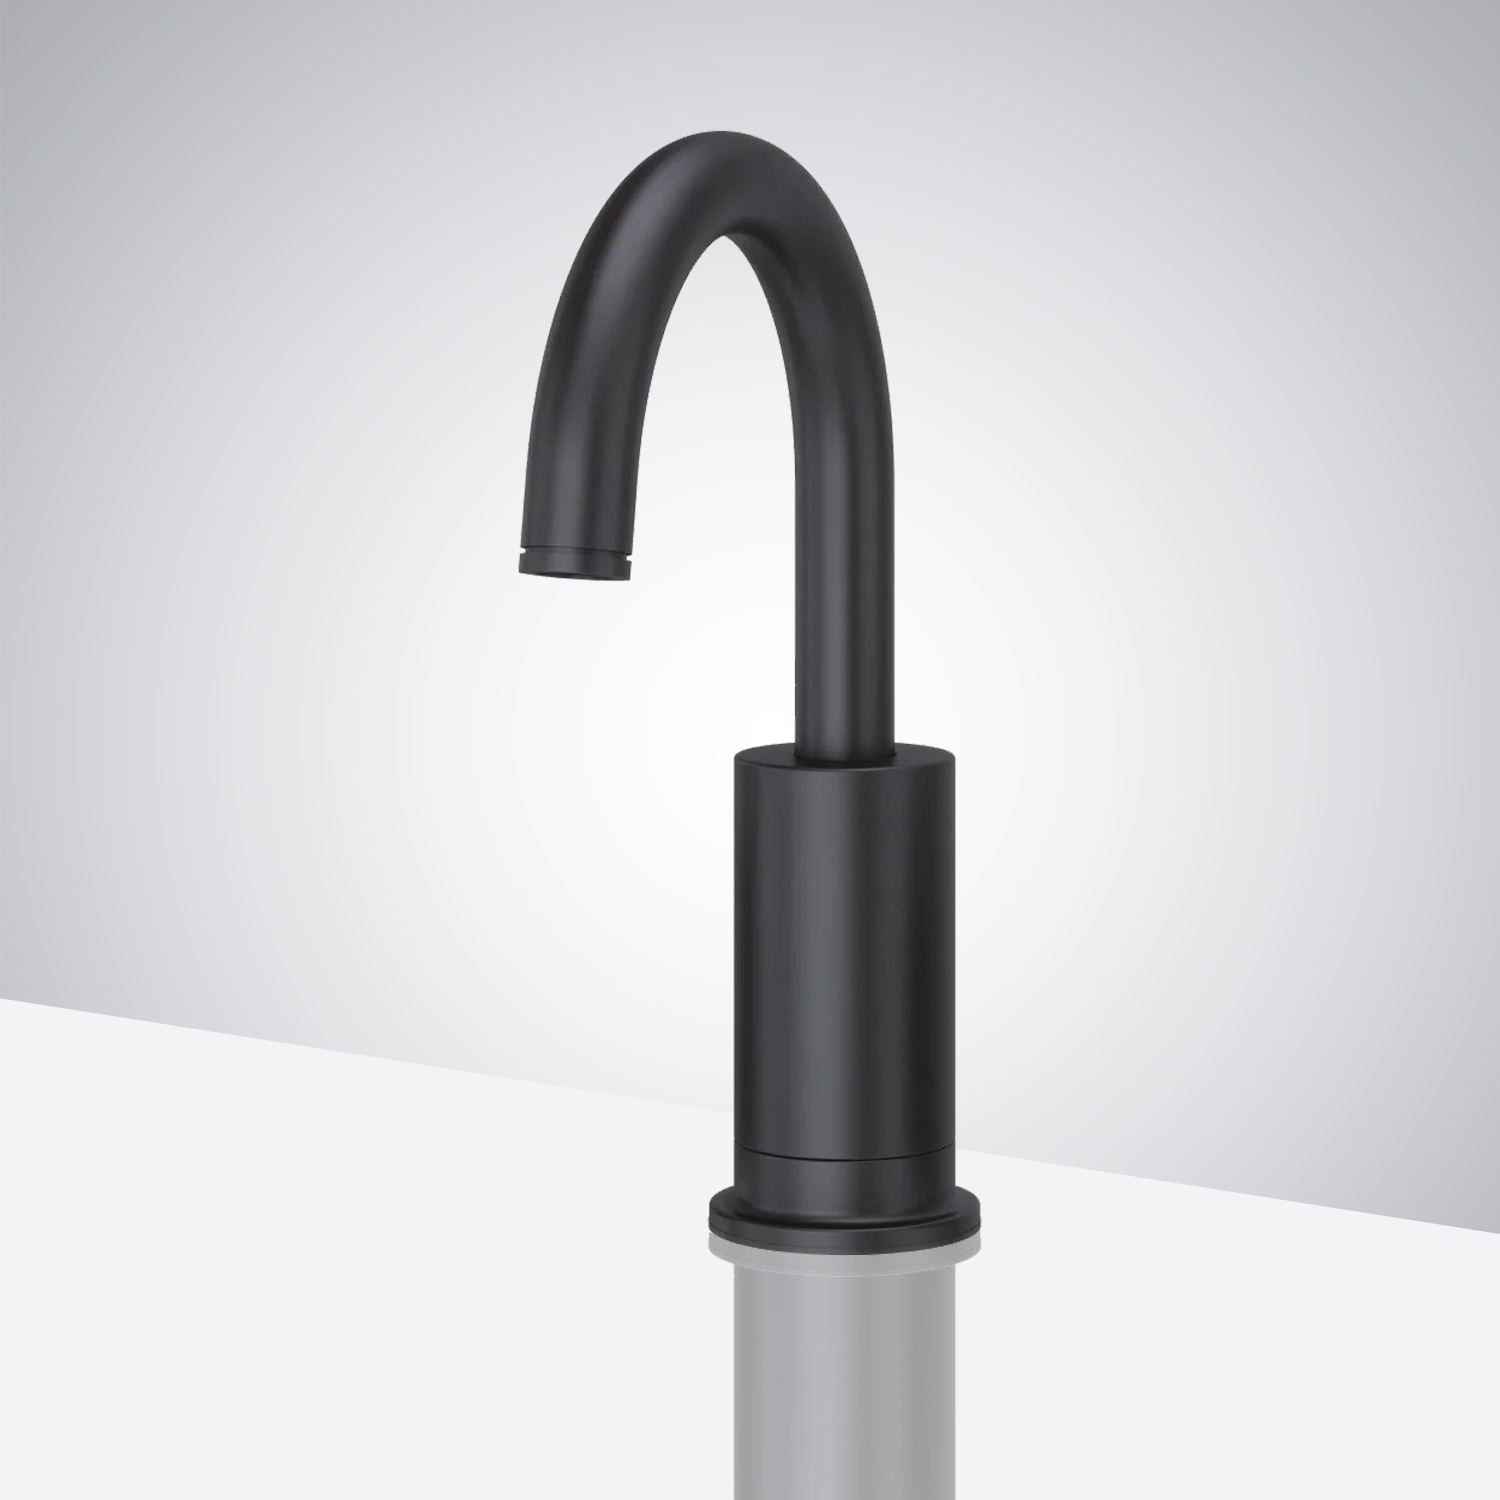 Fontana Commercial Matte Black Touchless Automatic Sensor Hands Free Faucet